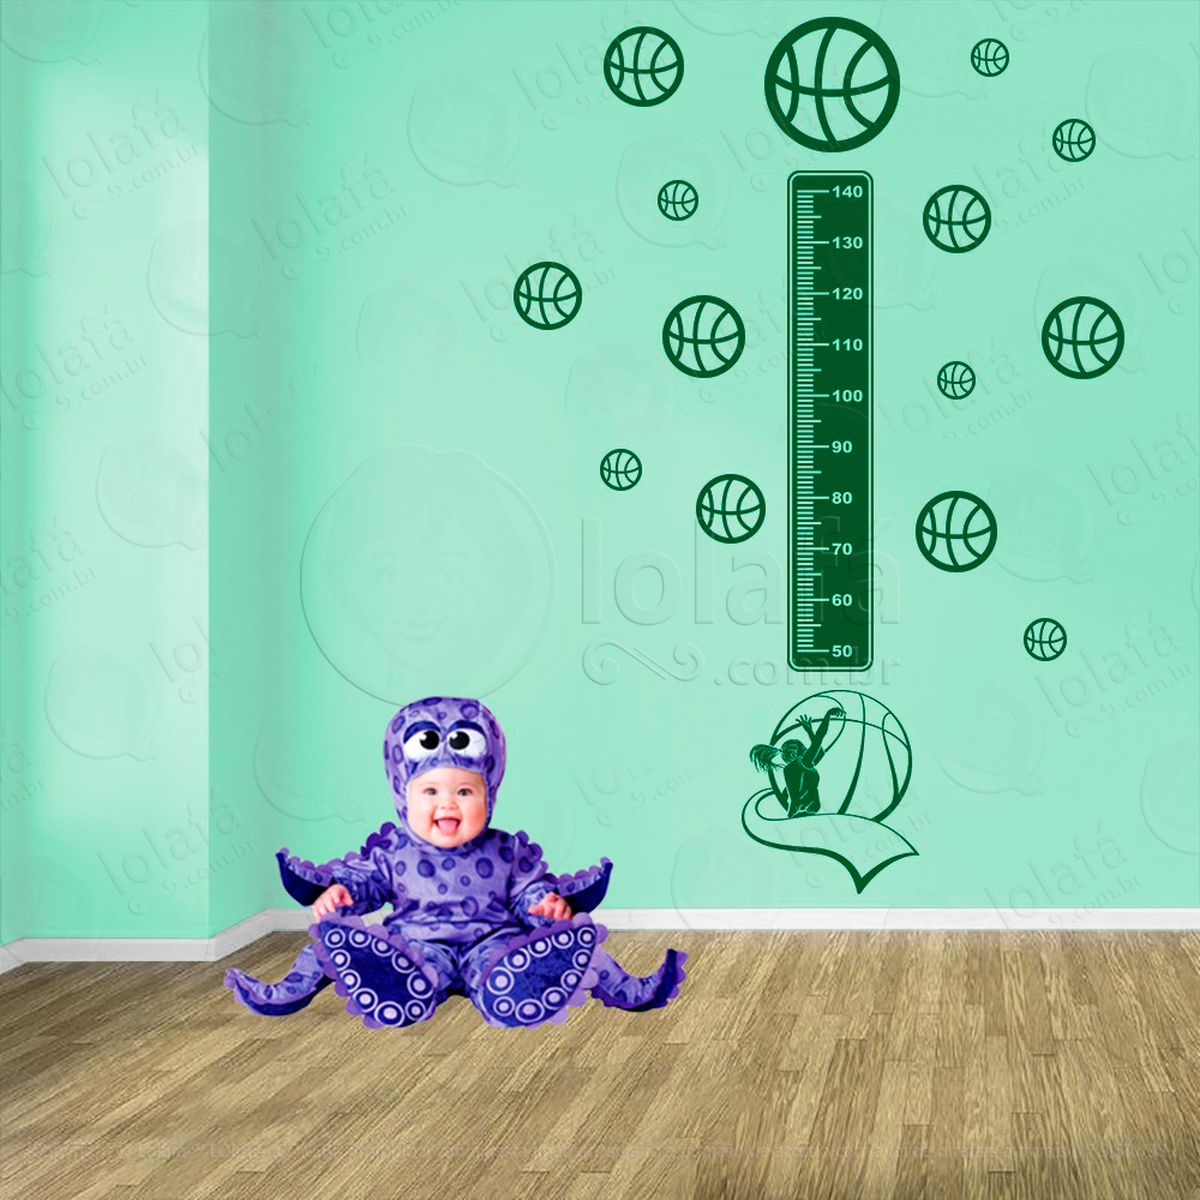 basquetebol e bolas de basquete adesivo régua de crescimento infantil, medidor de altura para quarto, porta e parede - mod:253